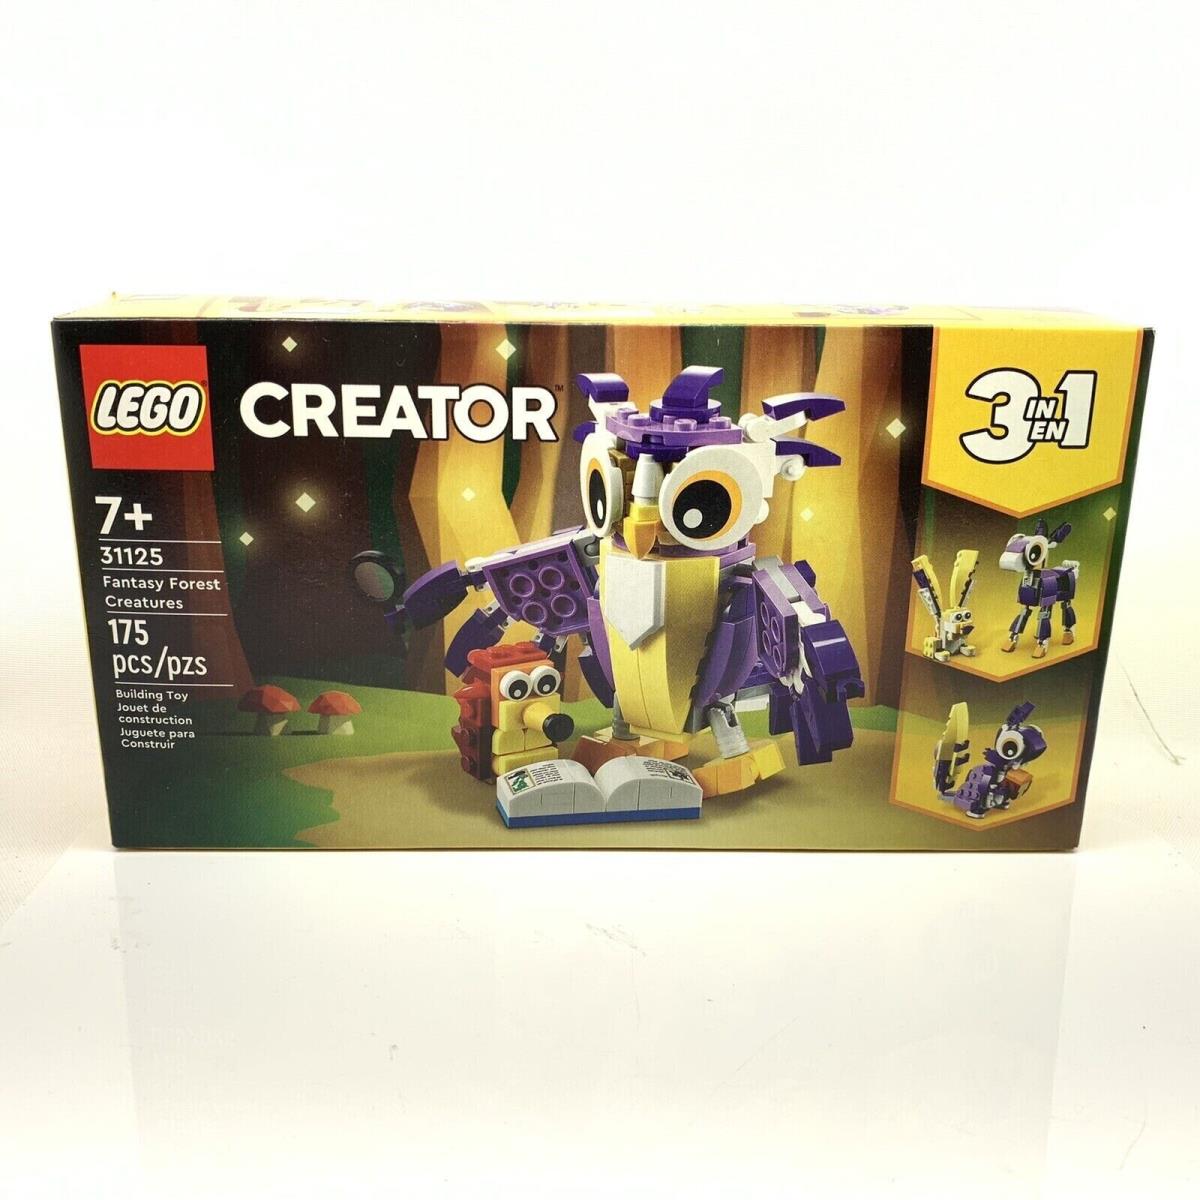 Lego Creator: Fantasy Forest Creatures 31125